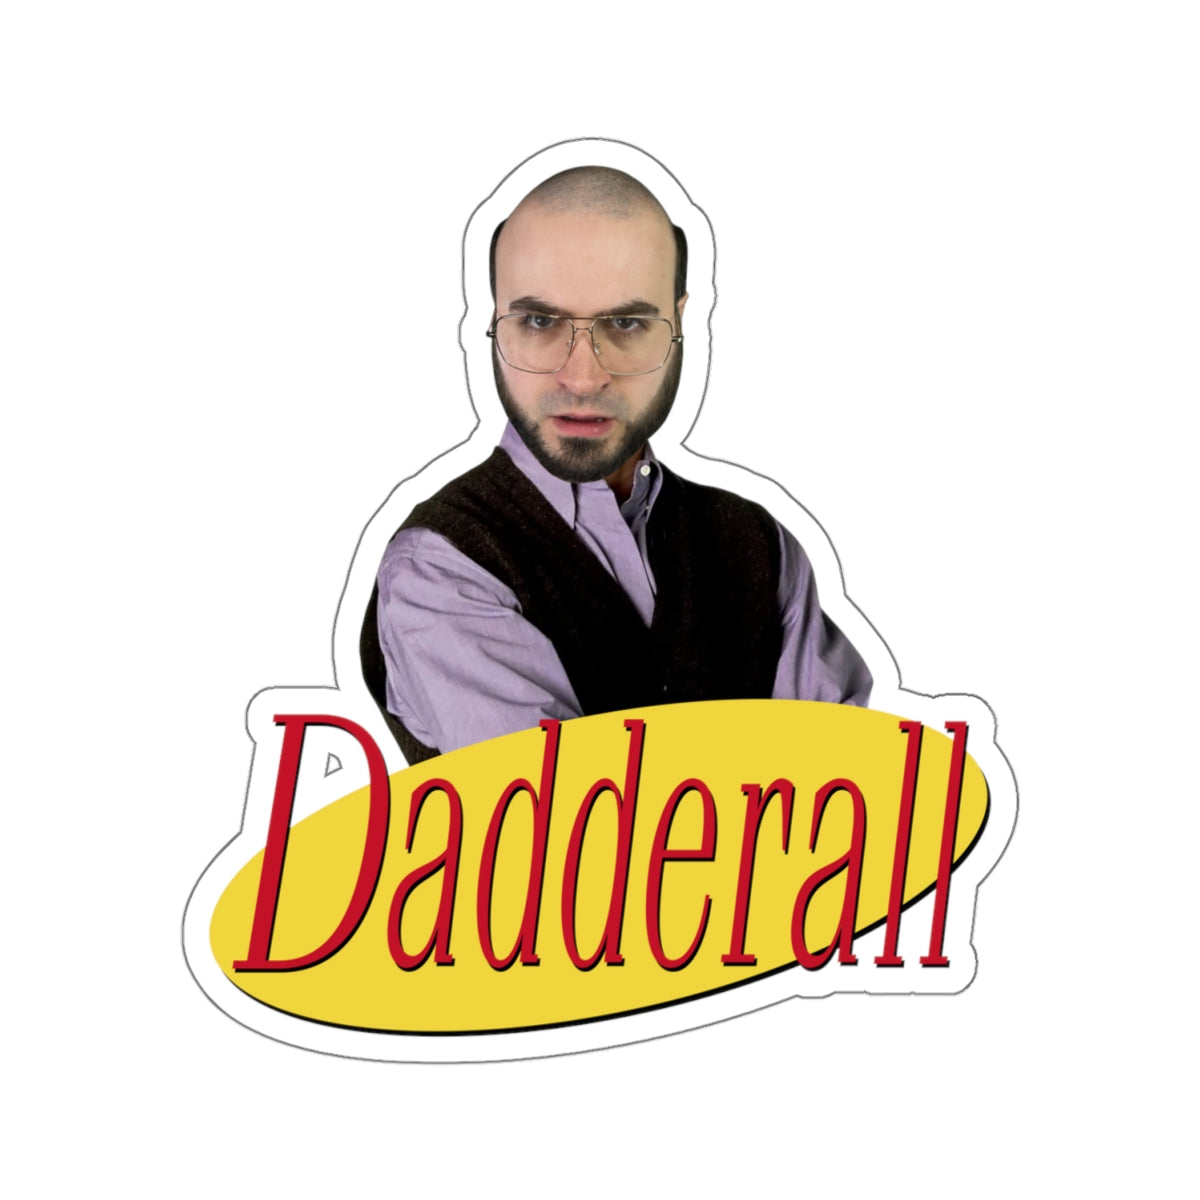 Daddfeld Portrait Sticker